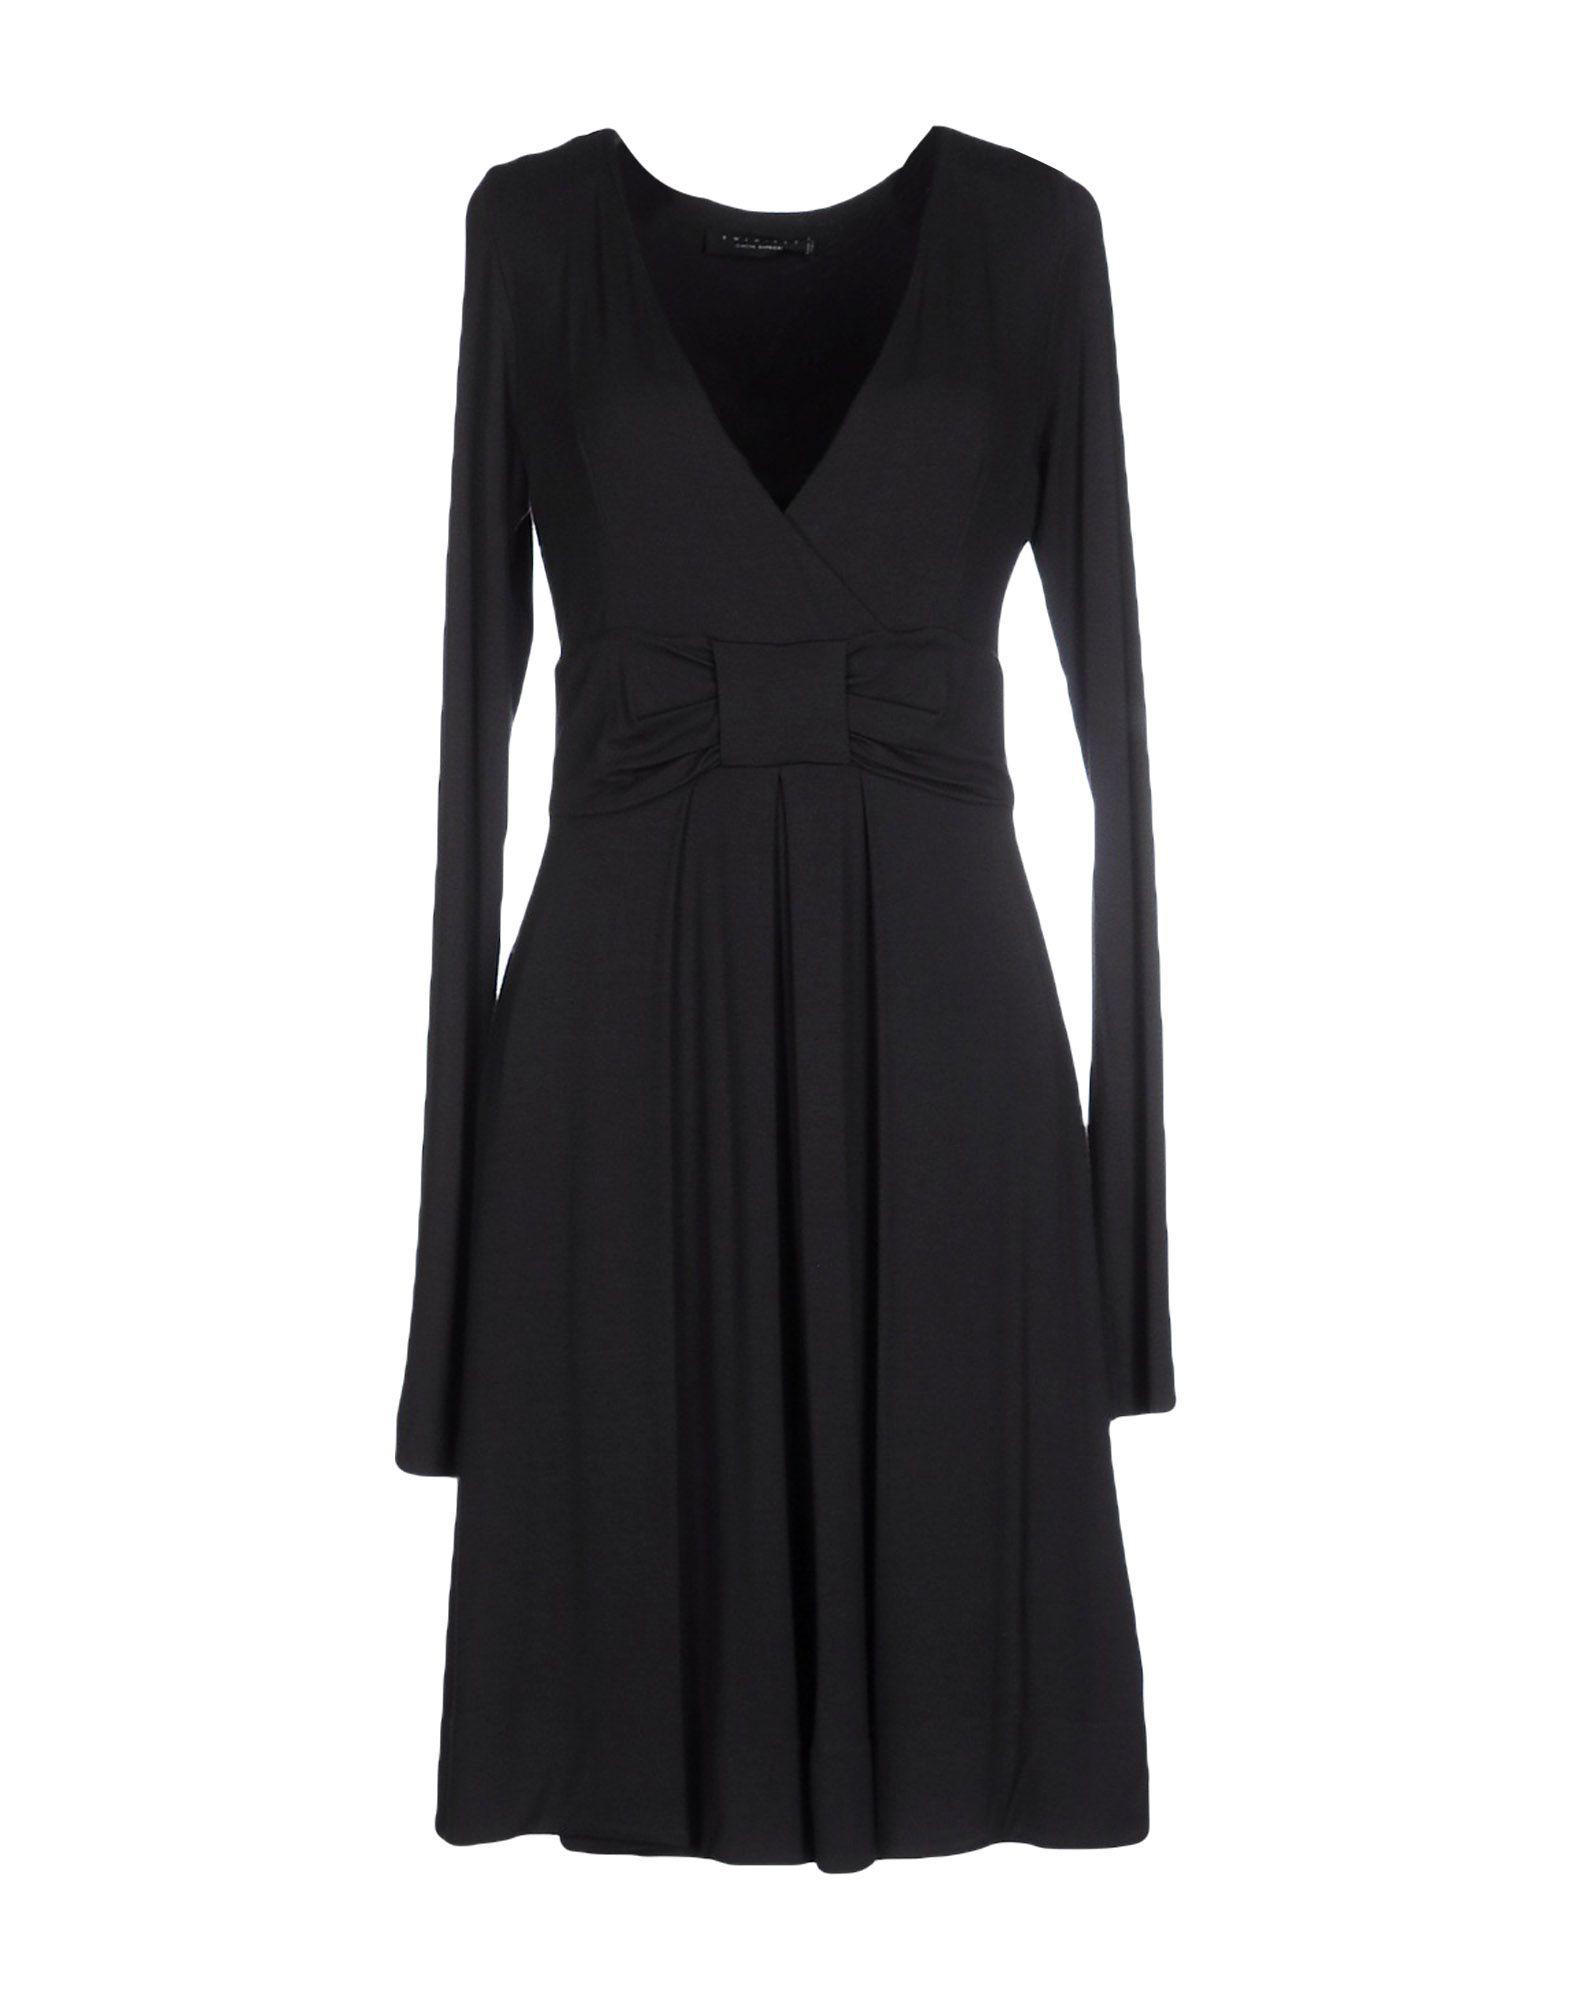 Lyst - Twin Set Short Dress in Black